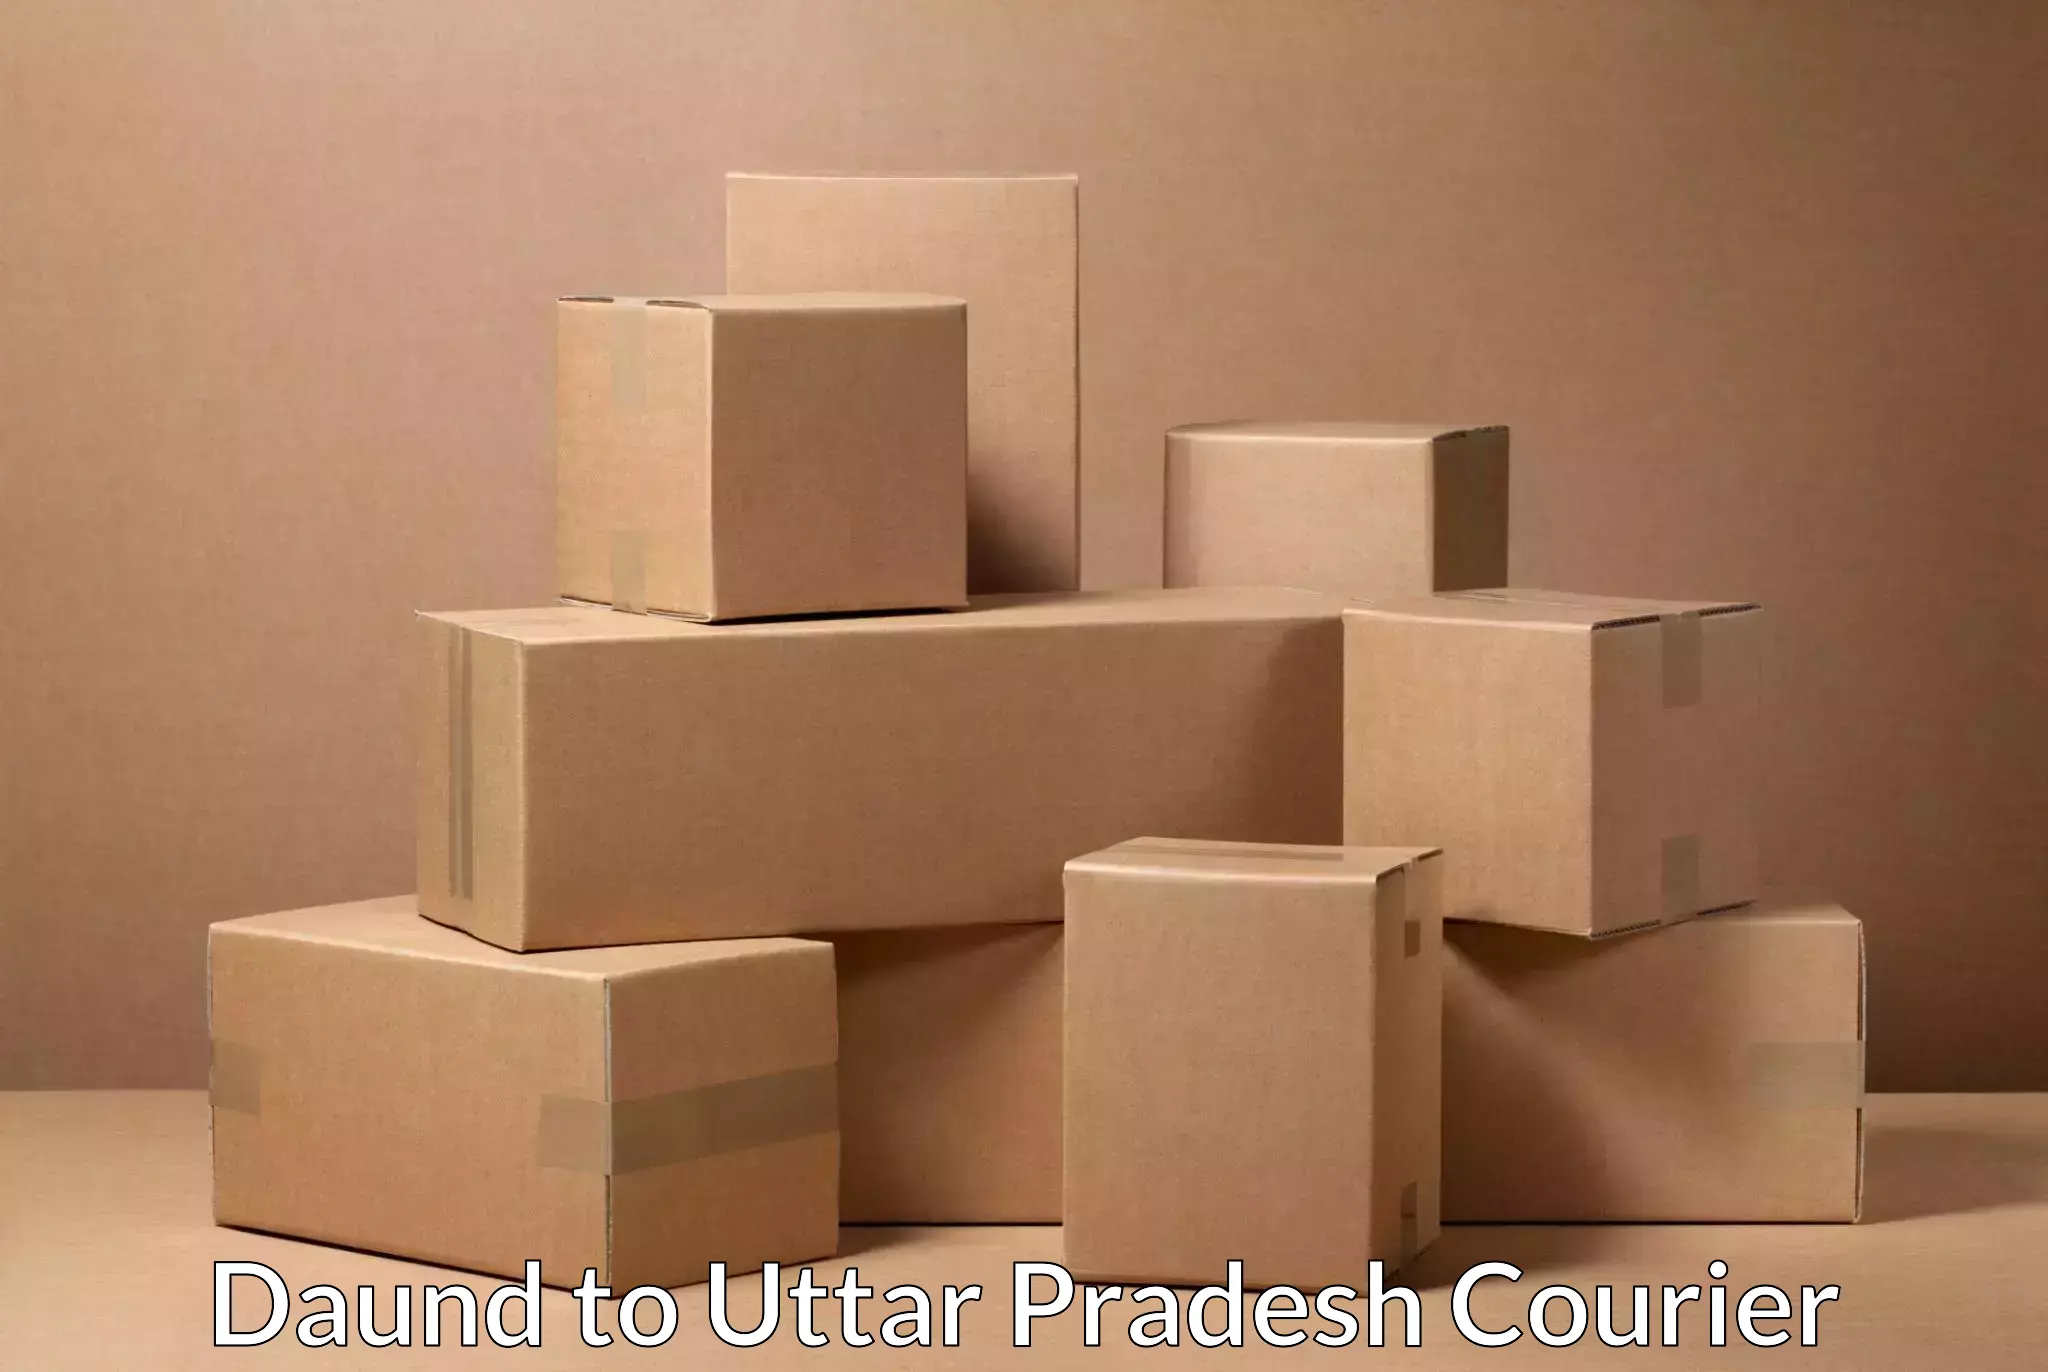 Sustainable courier practices Daund to Uttar Pradesh